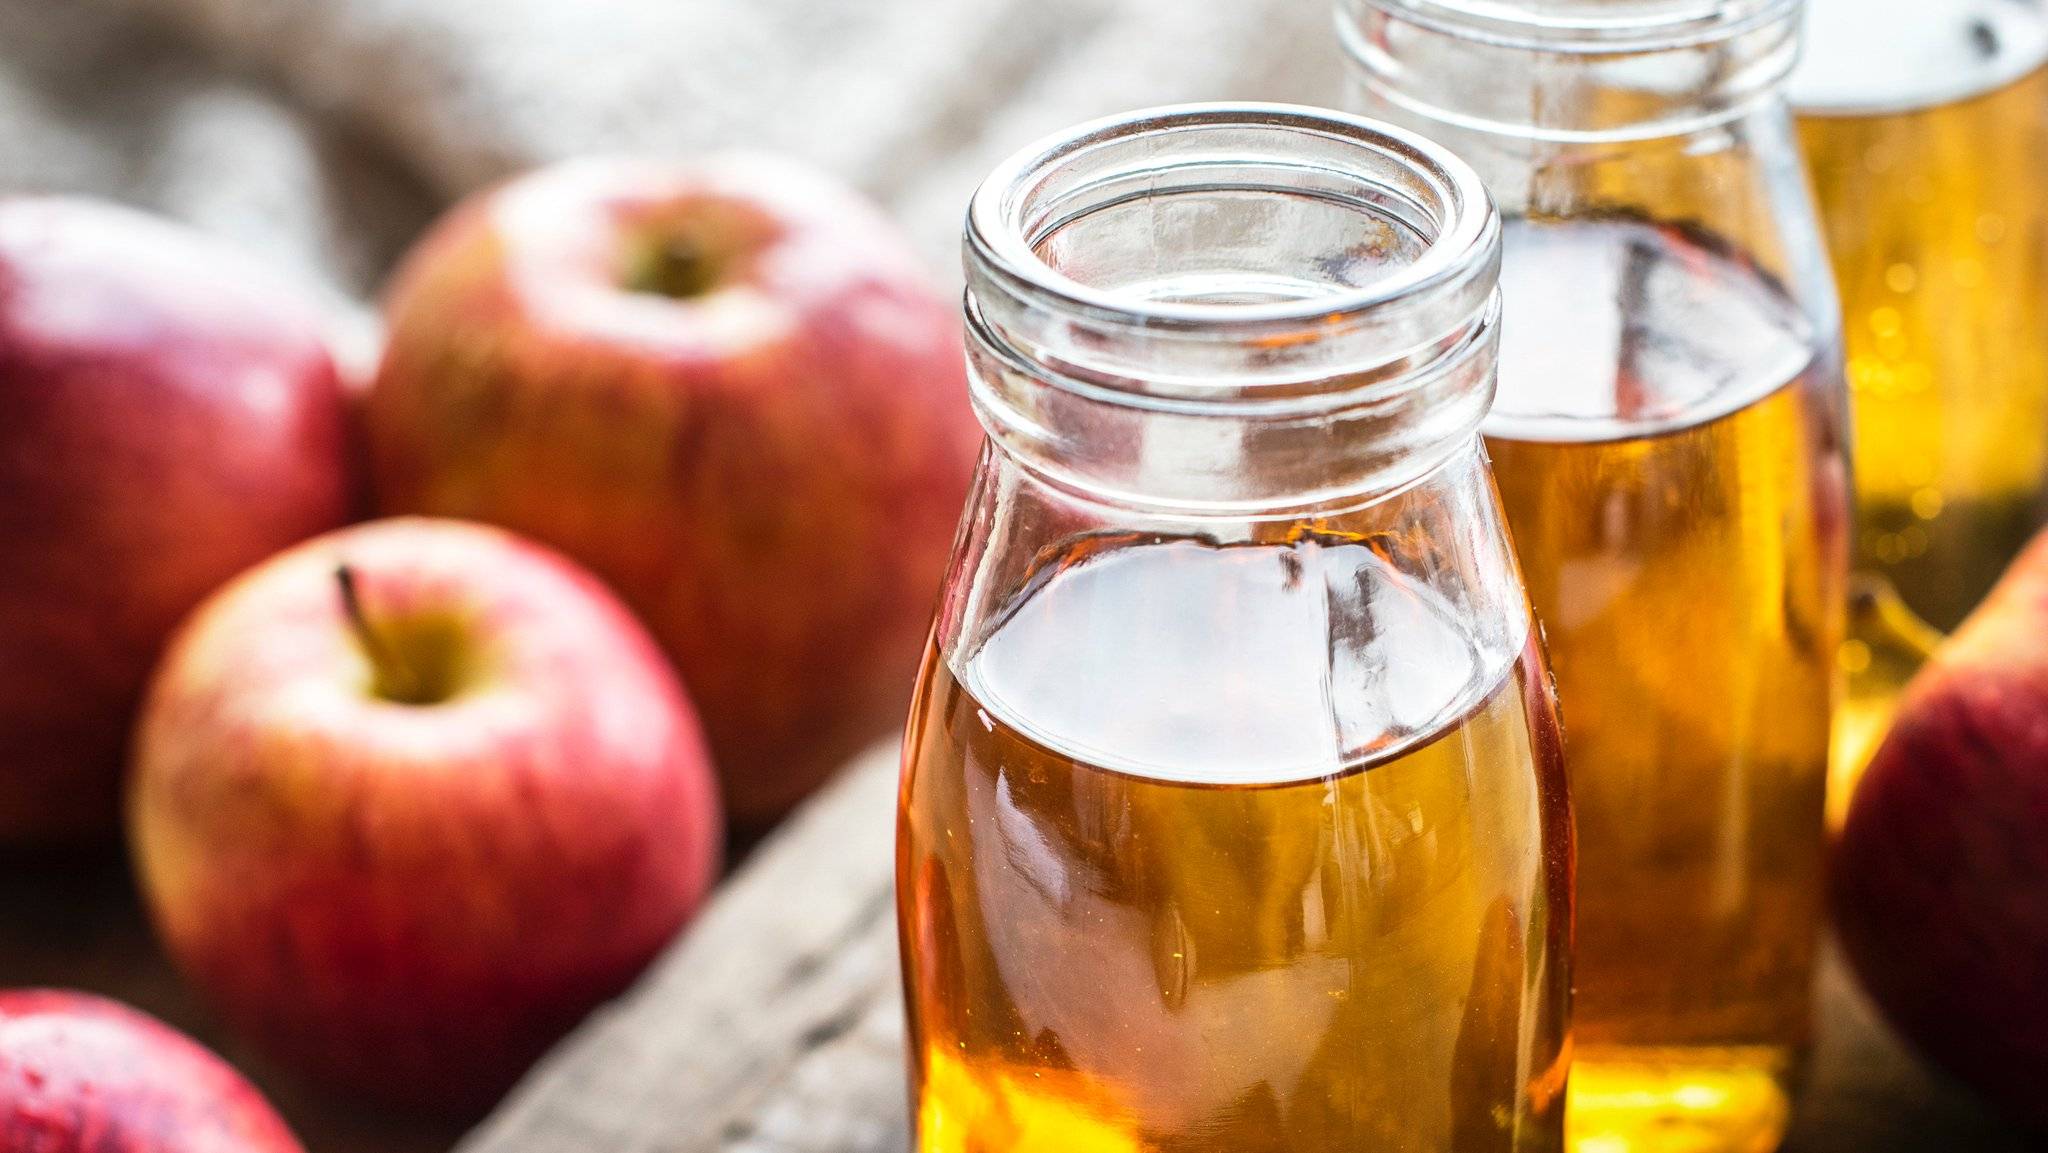 Польза и вред яблочного сидра. удивительные факты о составе, правильном употреблении, пользе и вреде яблочного сидра